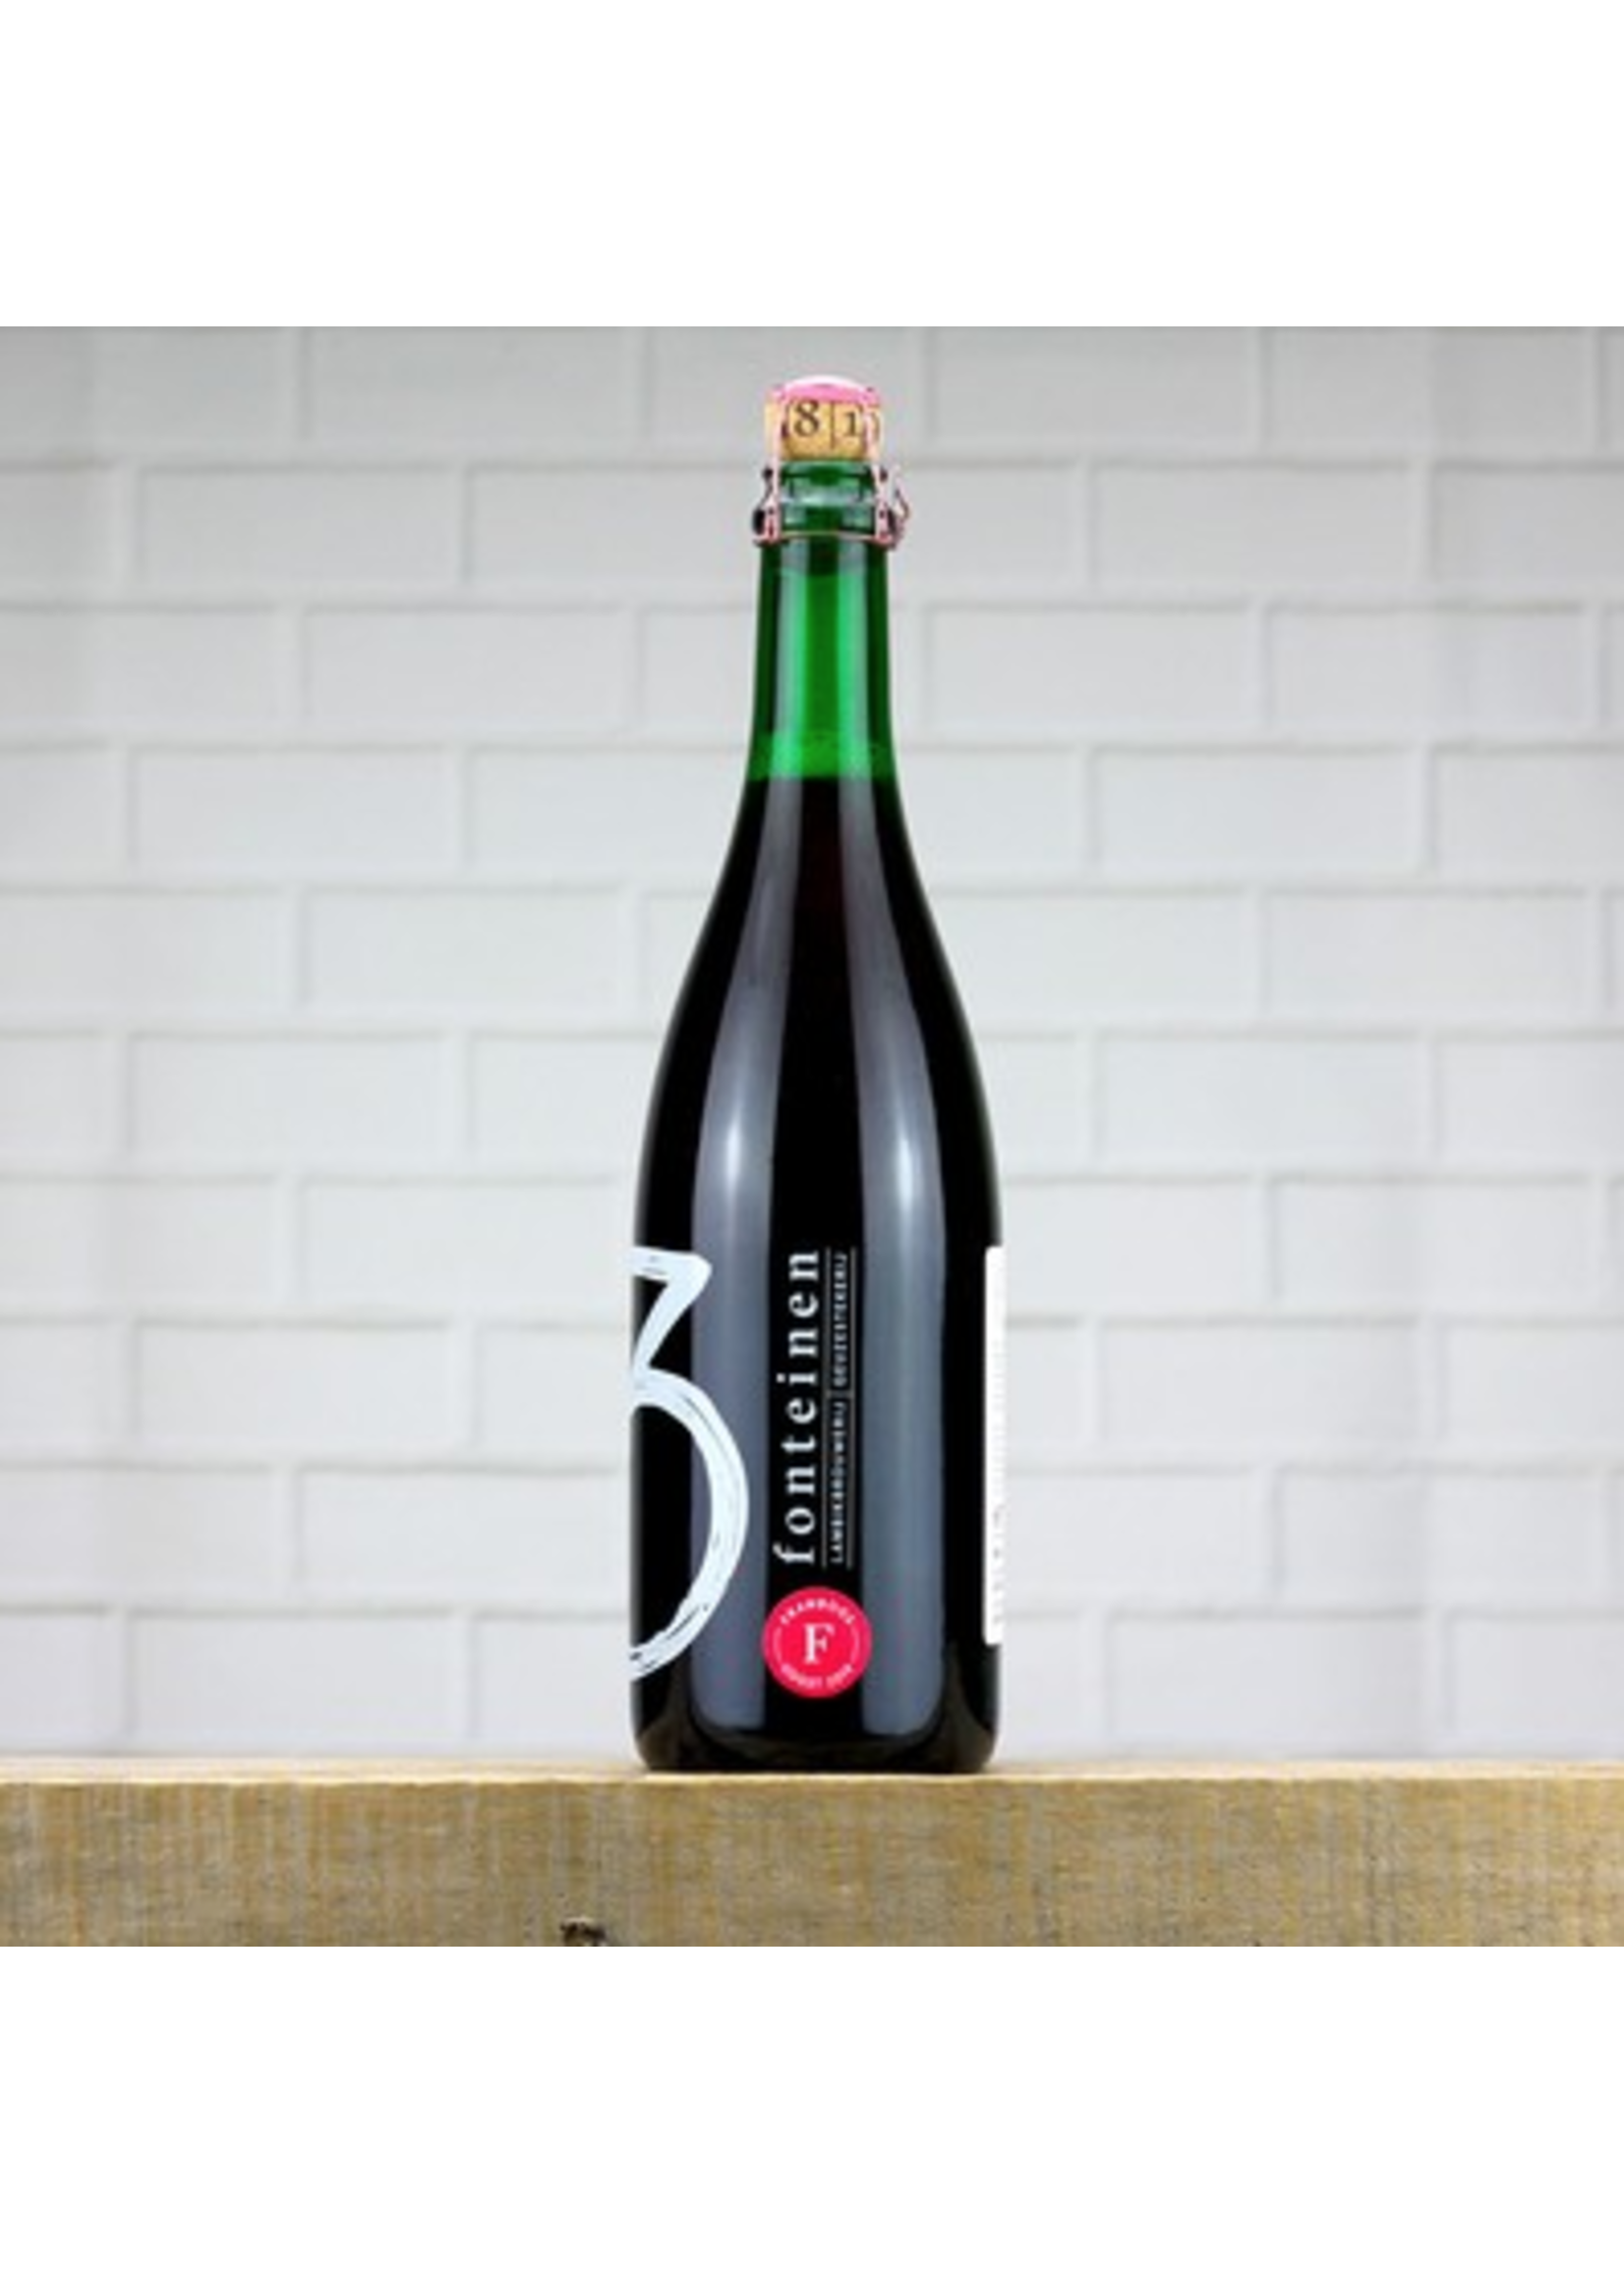 Brouwerij Drie Fonteinen Beer 750ml - Brouwerij Drie Fonteinen - Framboos Vat 2019